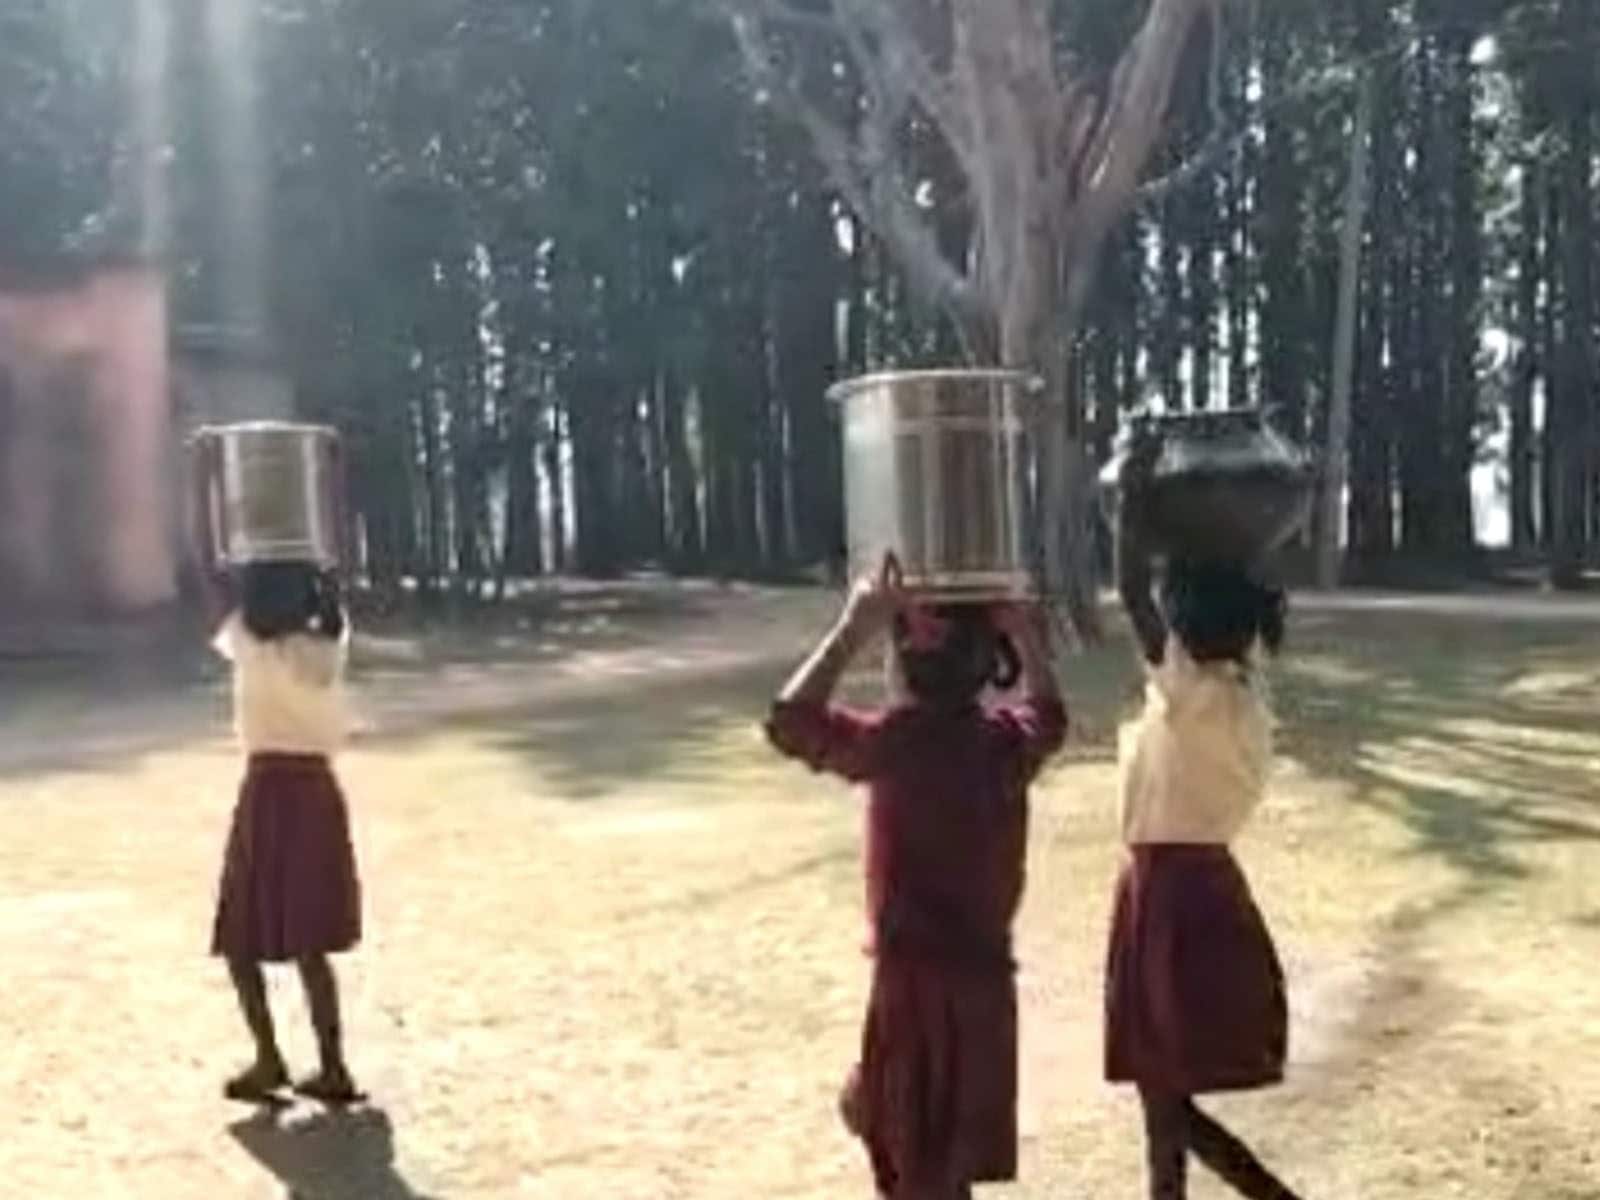 हाय रे स्कूल! पढ़ाई के बदले बच्चों से मिल डे मील के लिए ढुलवाता है पानी -  instead of studying children get water for mid day meal in school jhnj –  News18 हिंदी